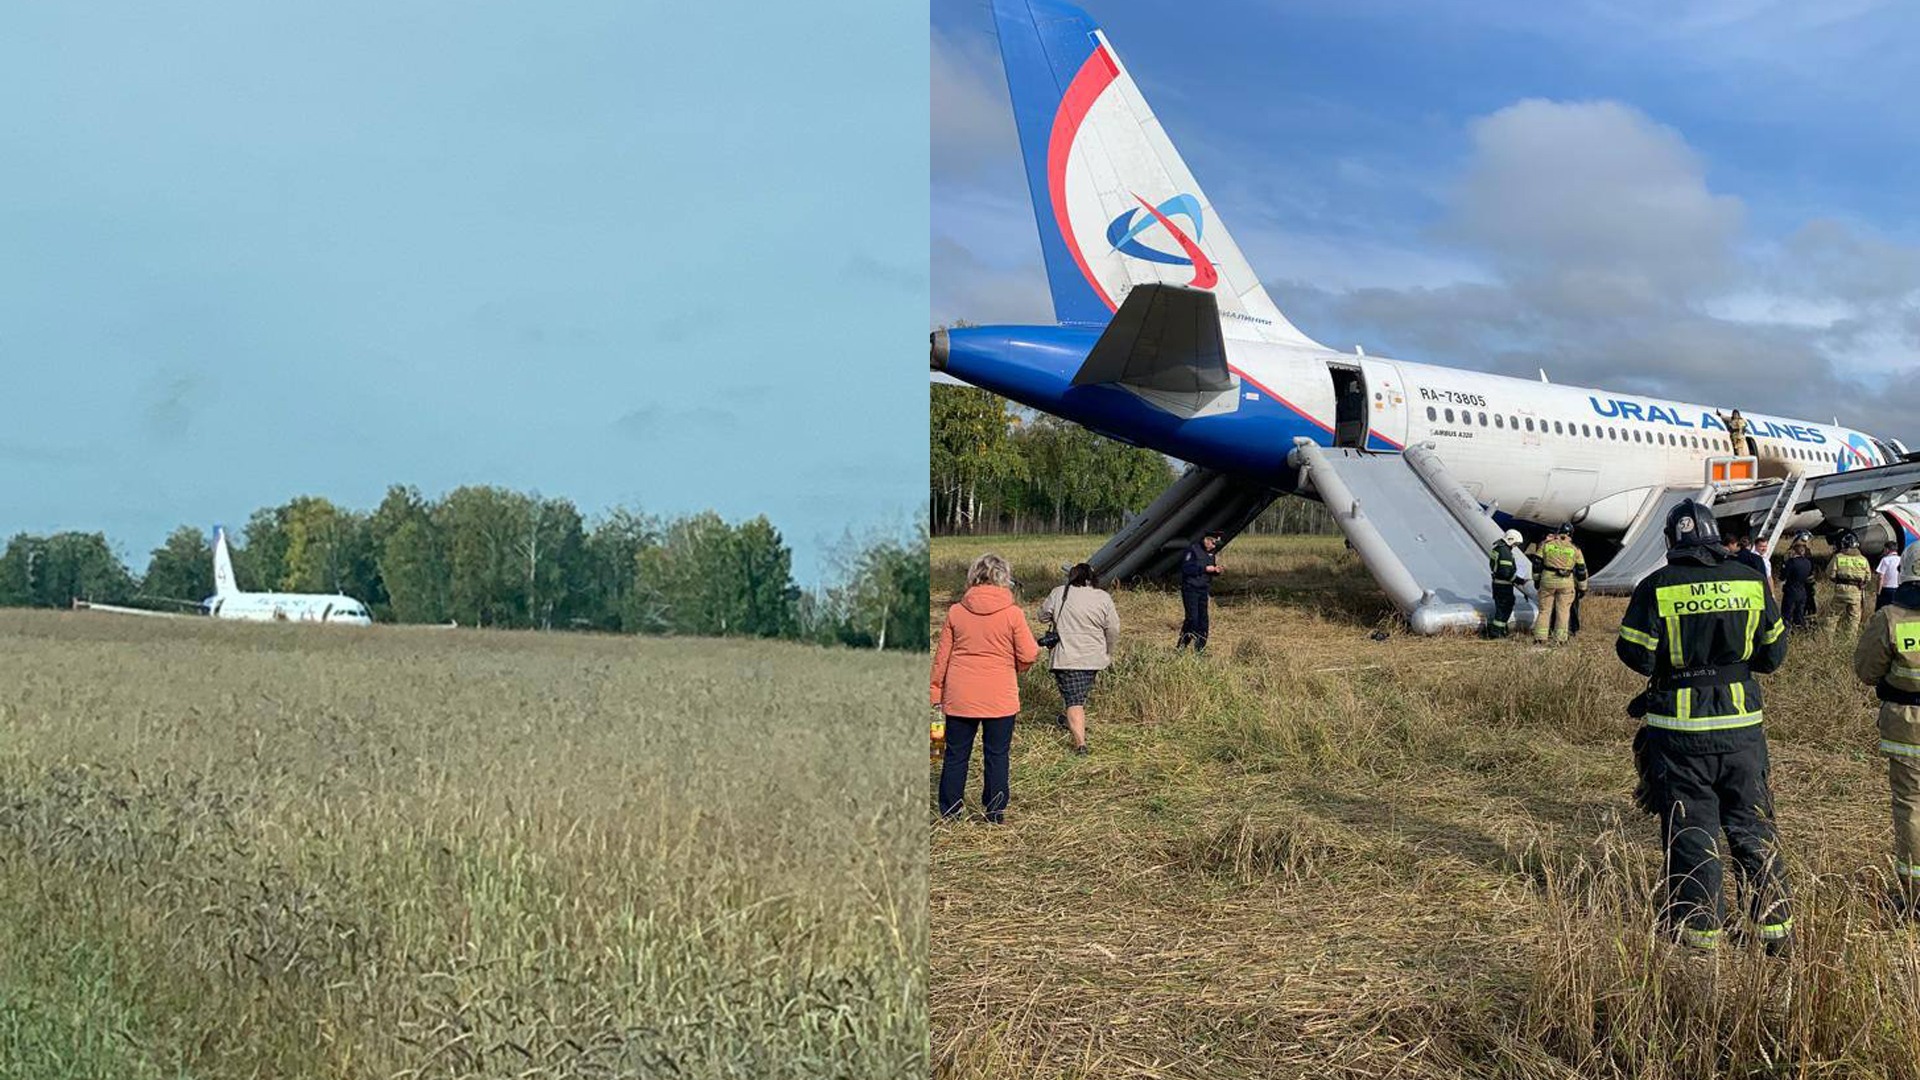 Самолет совершил жесткую посадку в поле